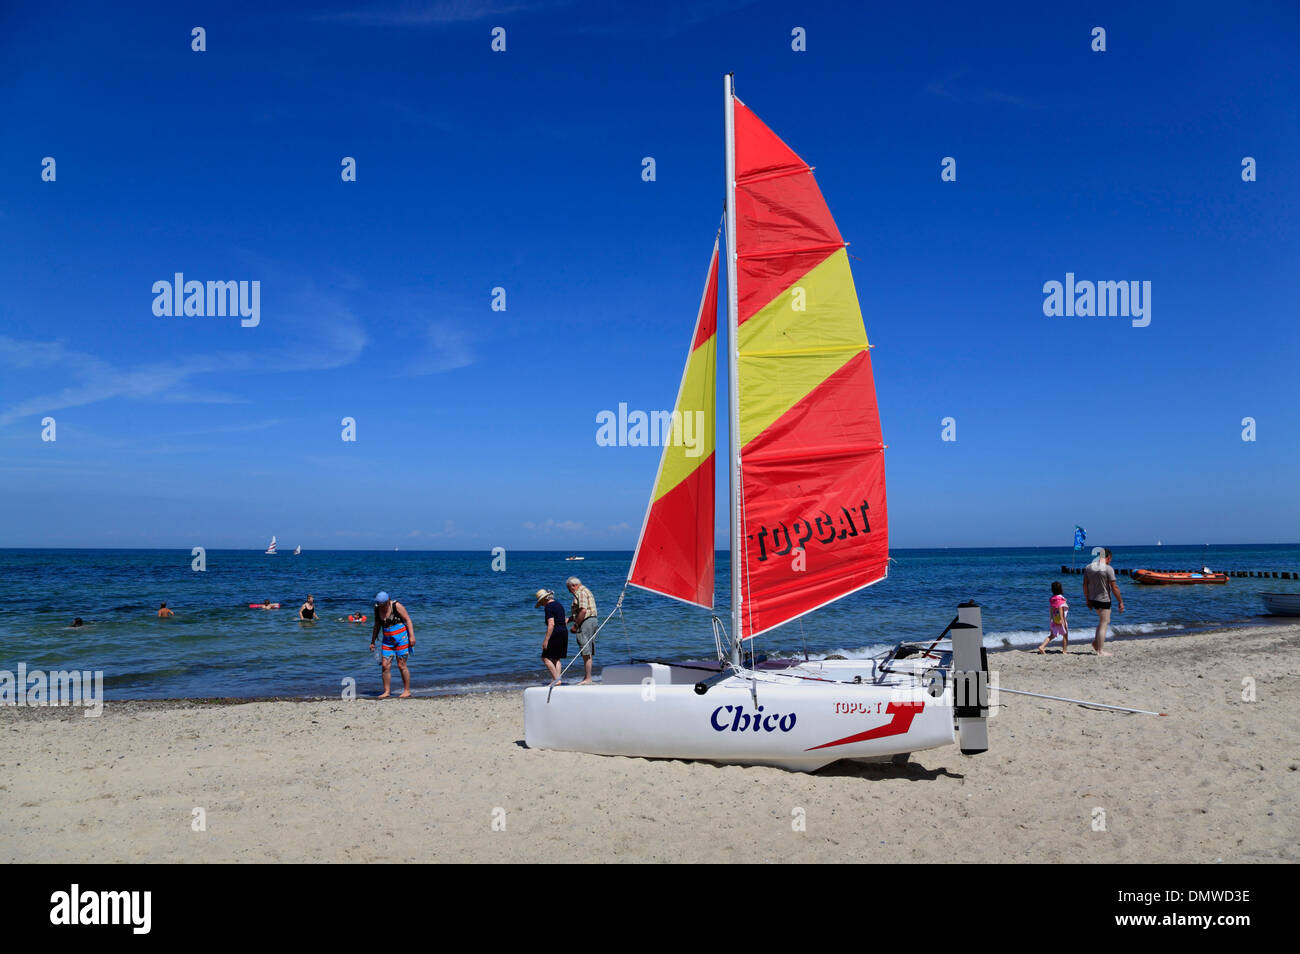 Kühlungsborn, Katamaran, sur la plage, de la mer Baltique Mecklembourg-Poméranie-Occidentale, Allemagne Banque D'Images